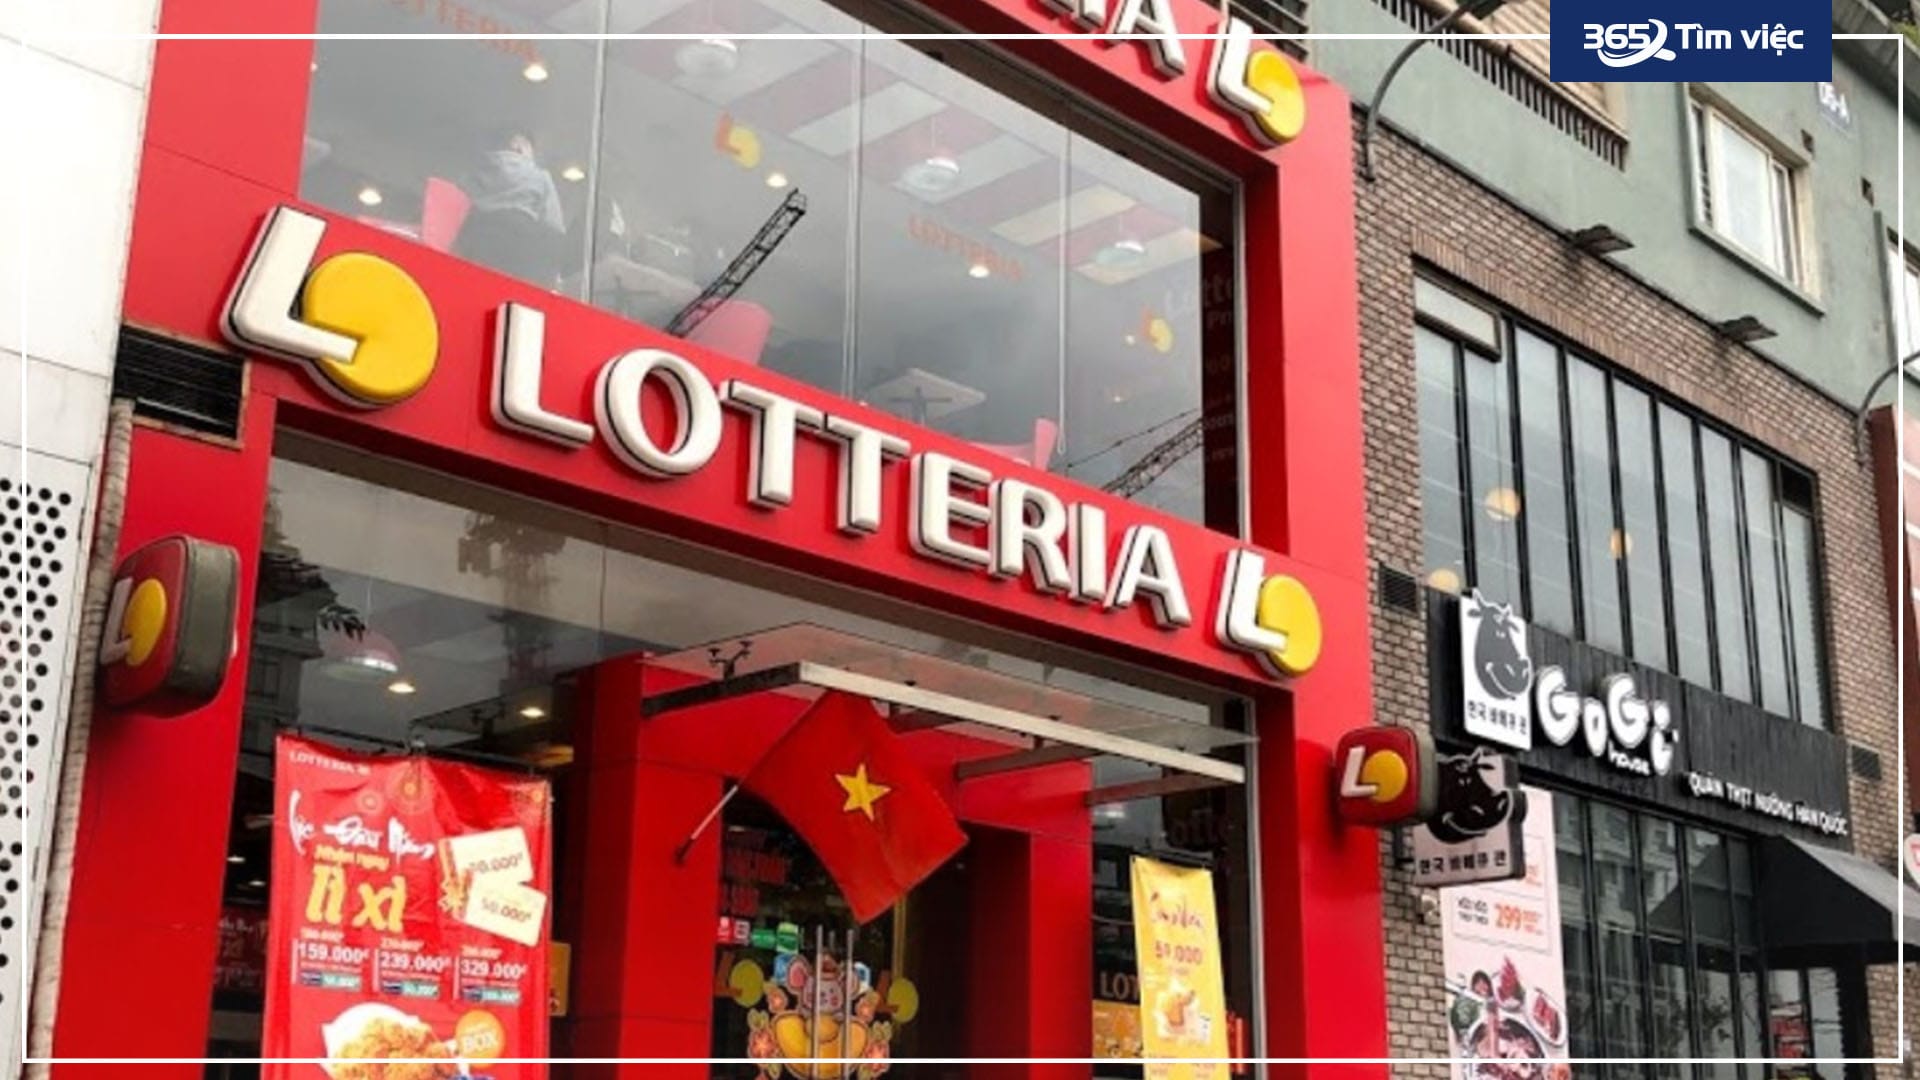 Lotteria Việt Nam thông tin đóng cửa chuỗi cửa hàng tại Việt Nam chỉ là  hiểu lầm  Báo Người lao động